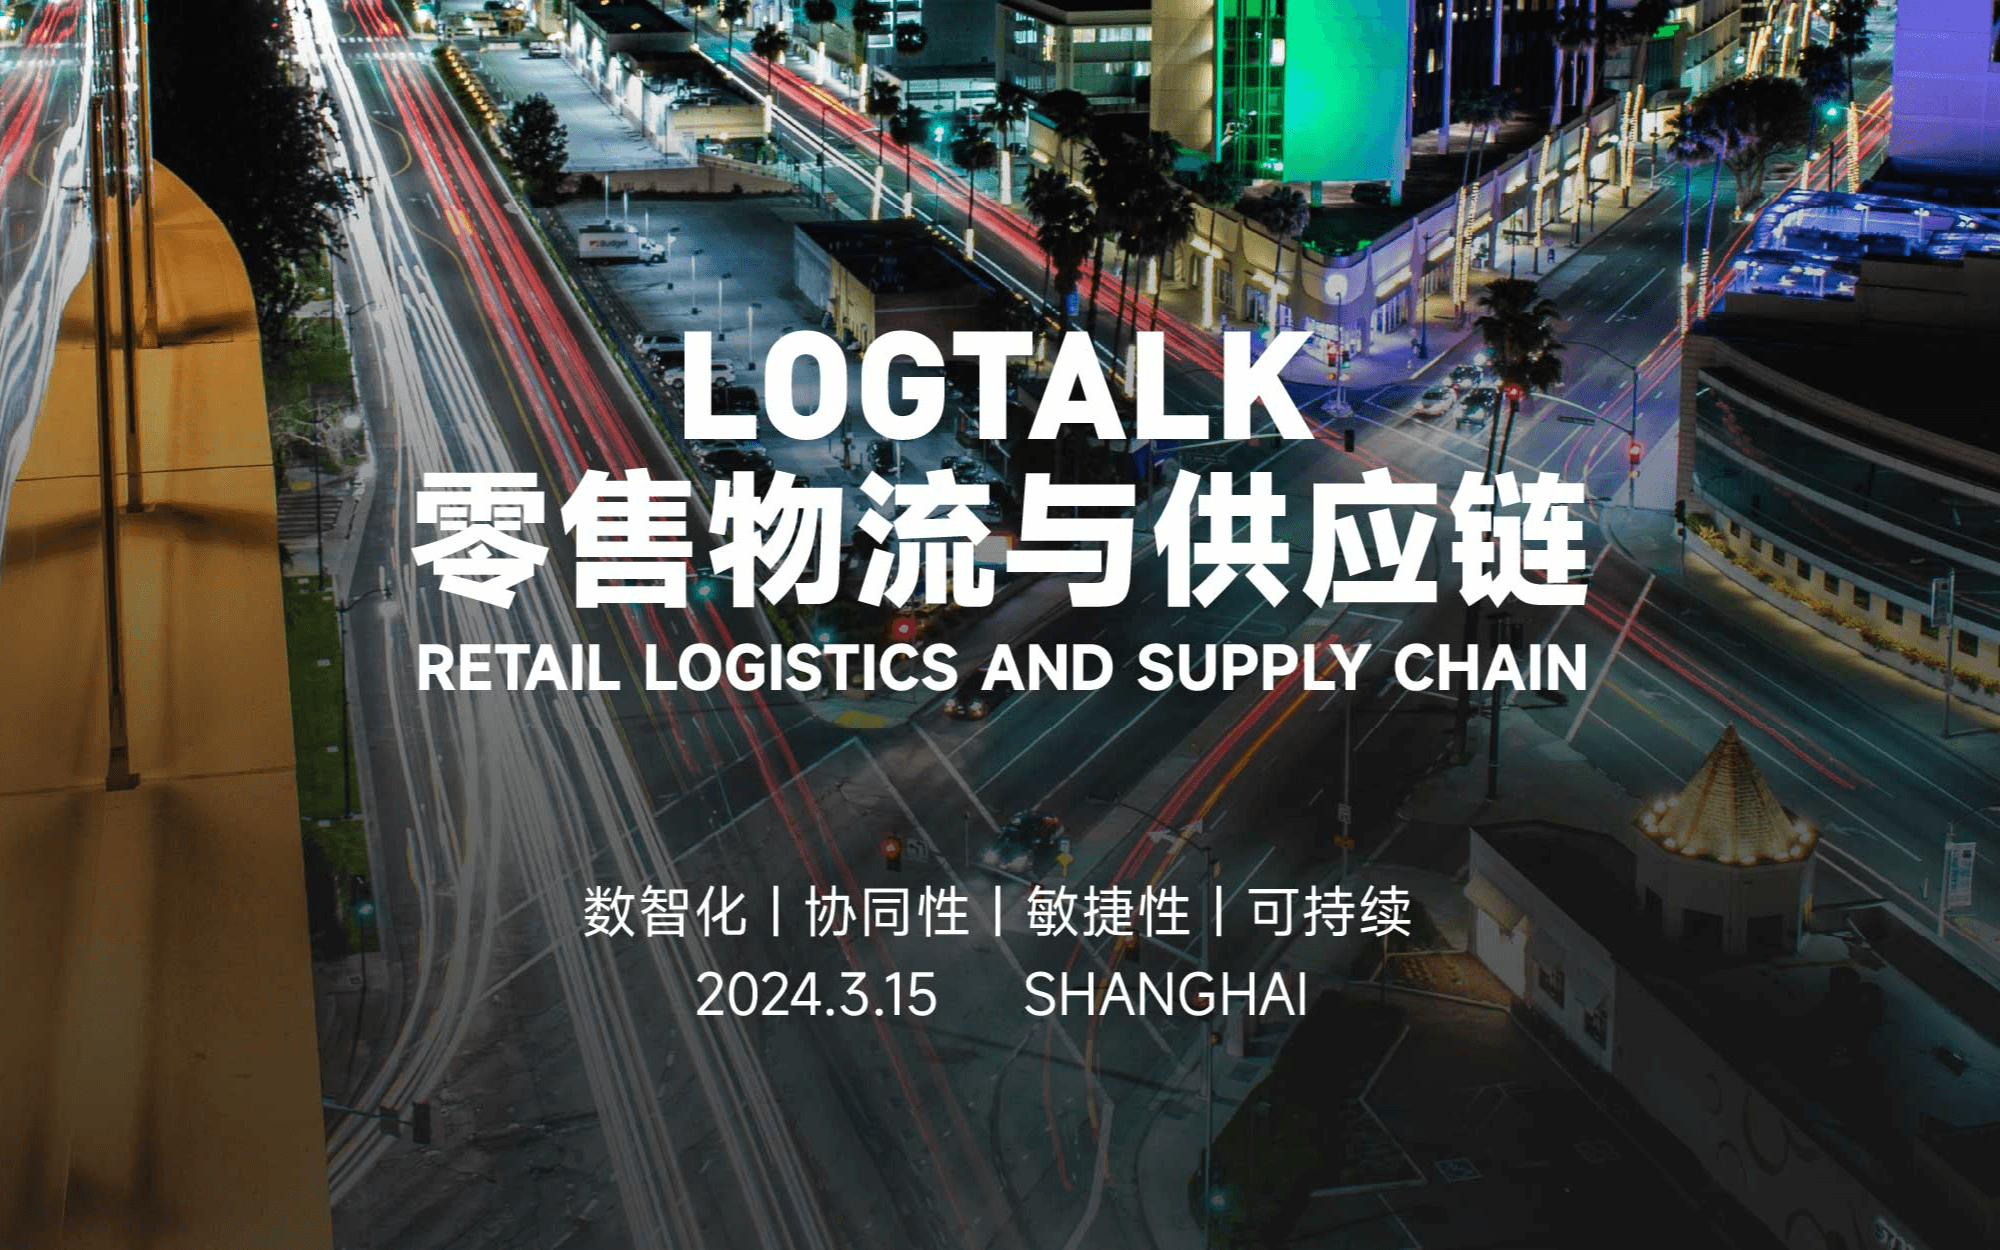 Logtalk零售物流供应链峰会